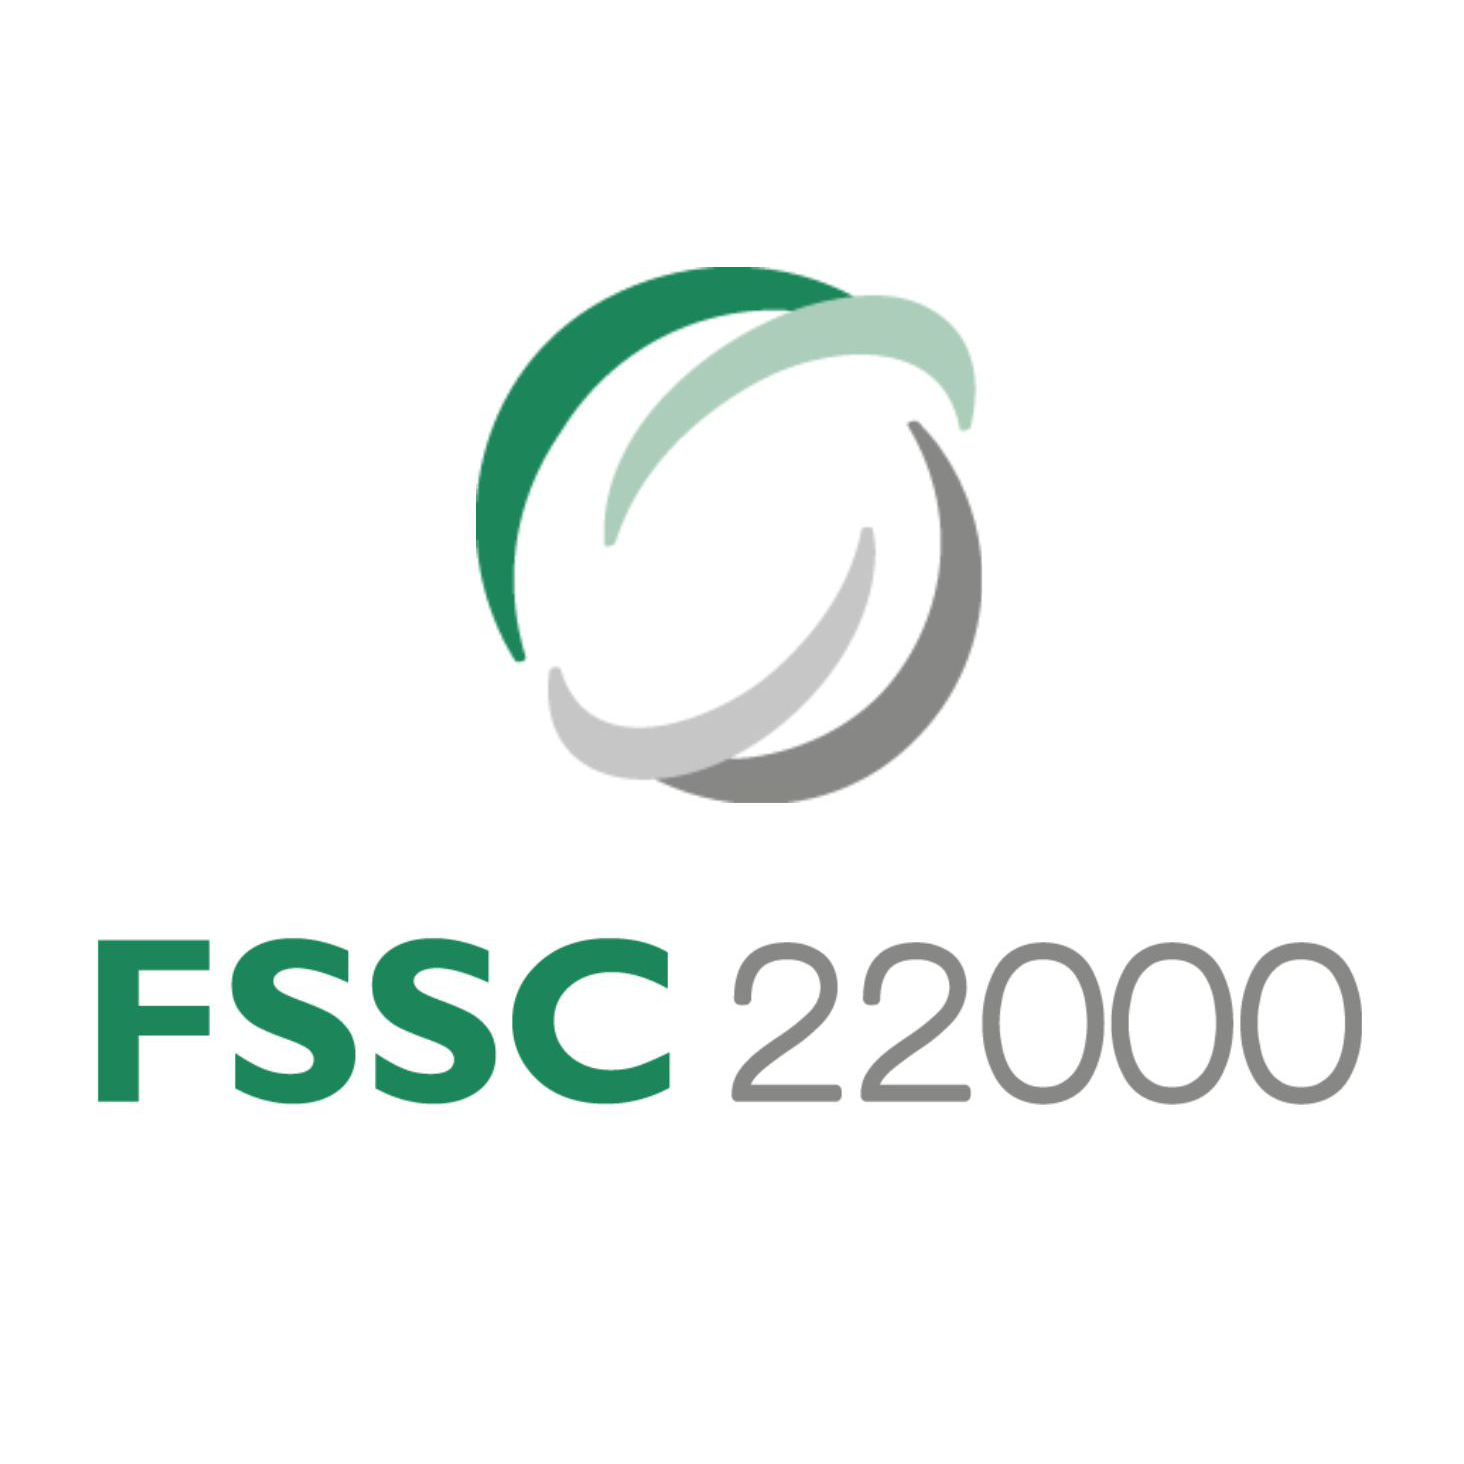 fssc_22000